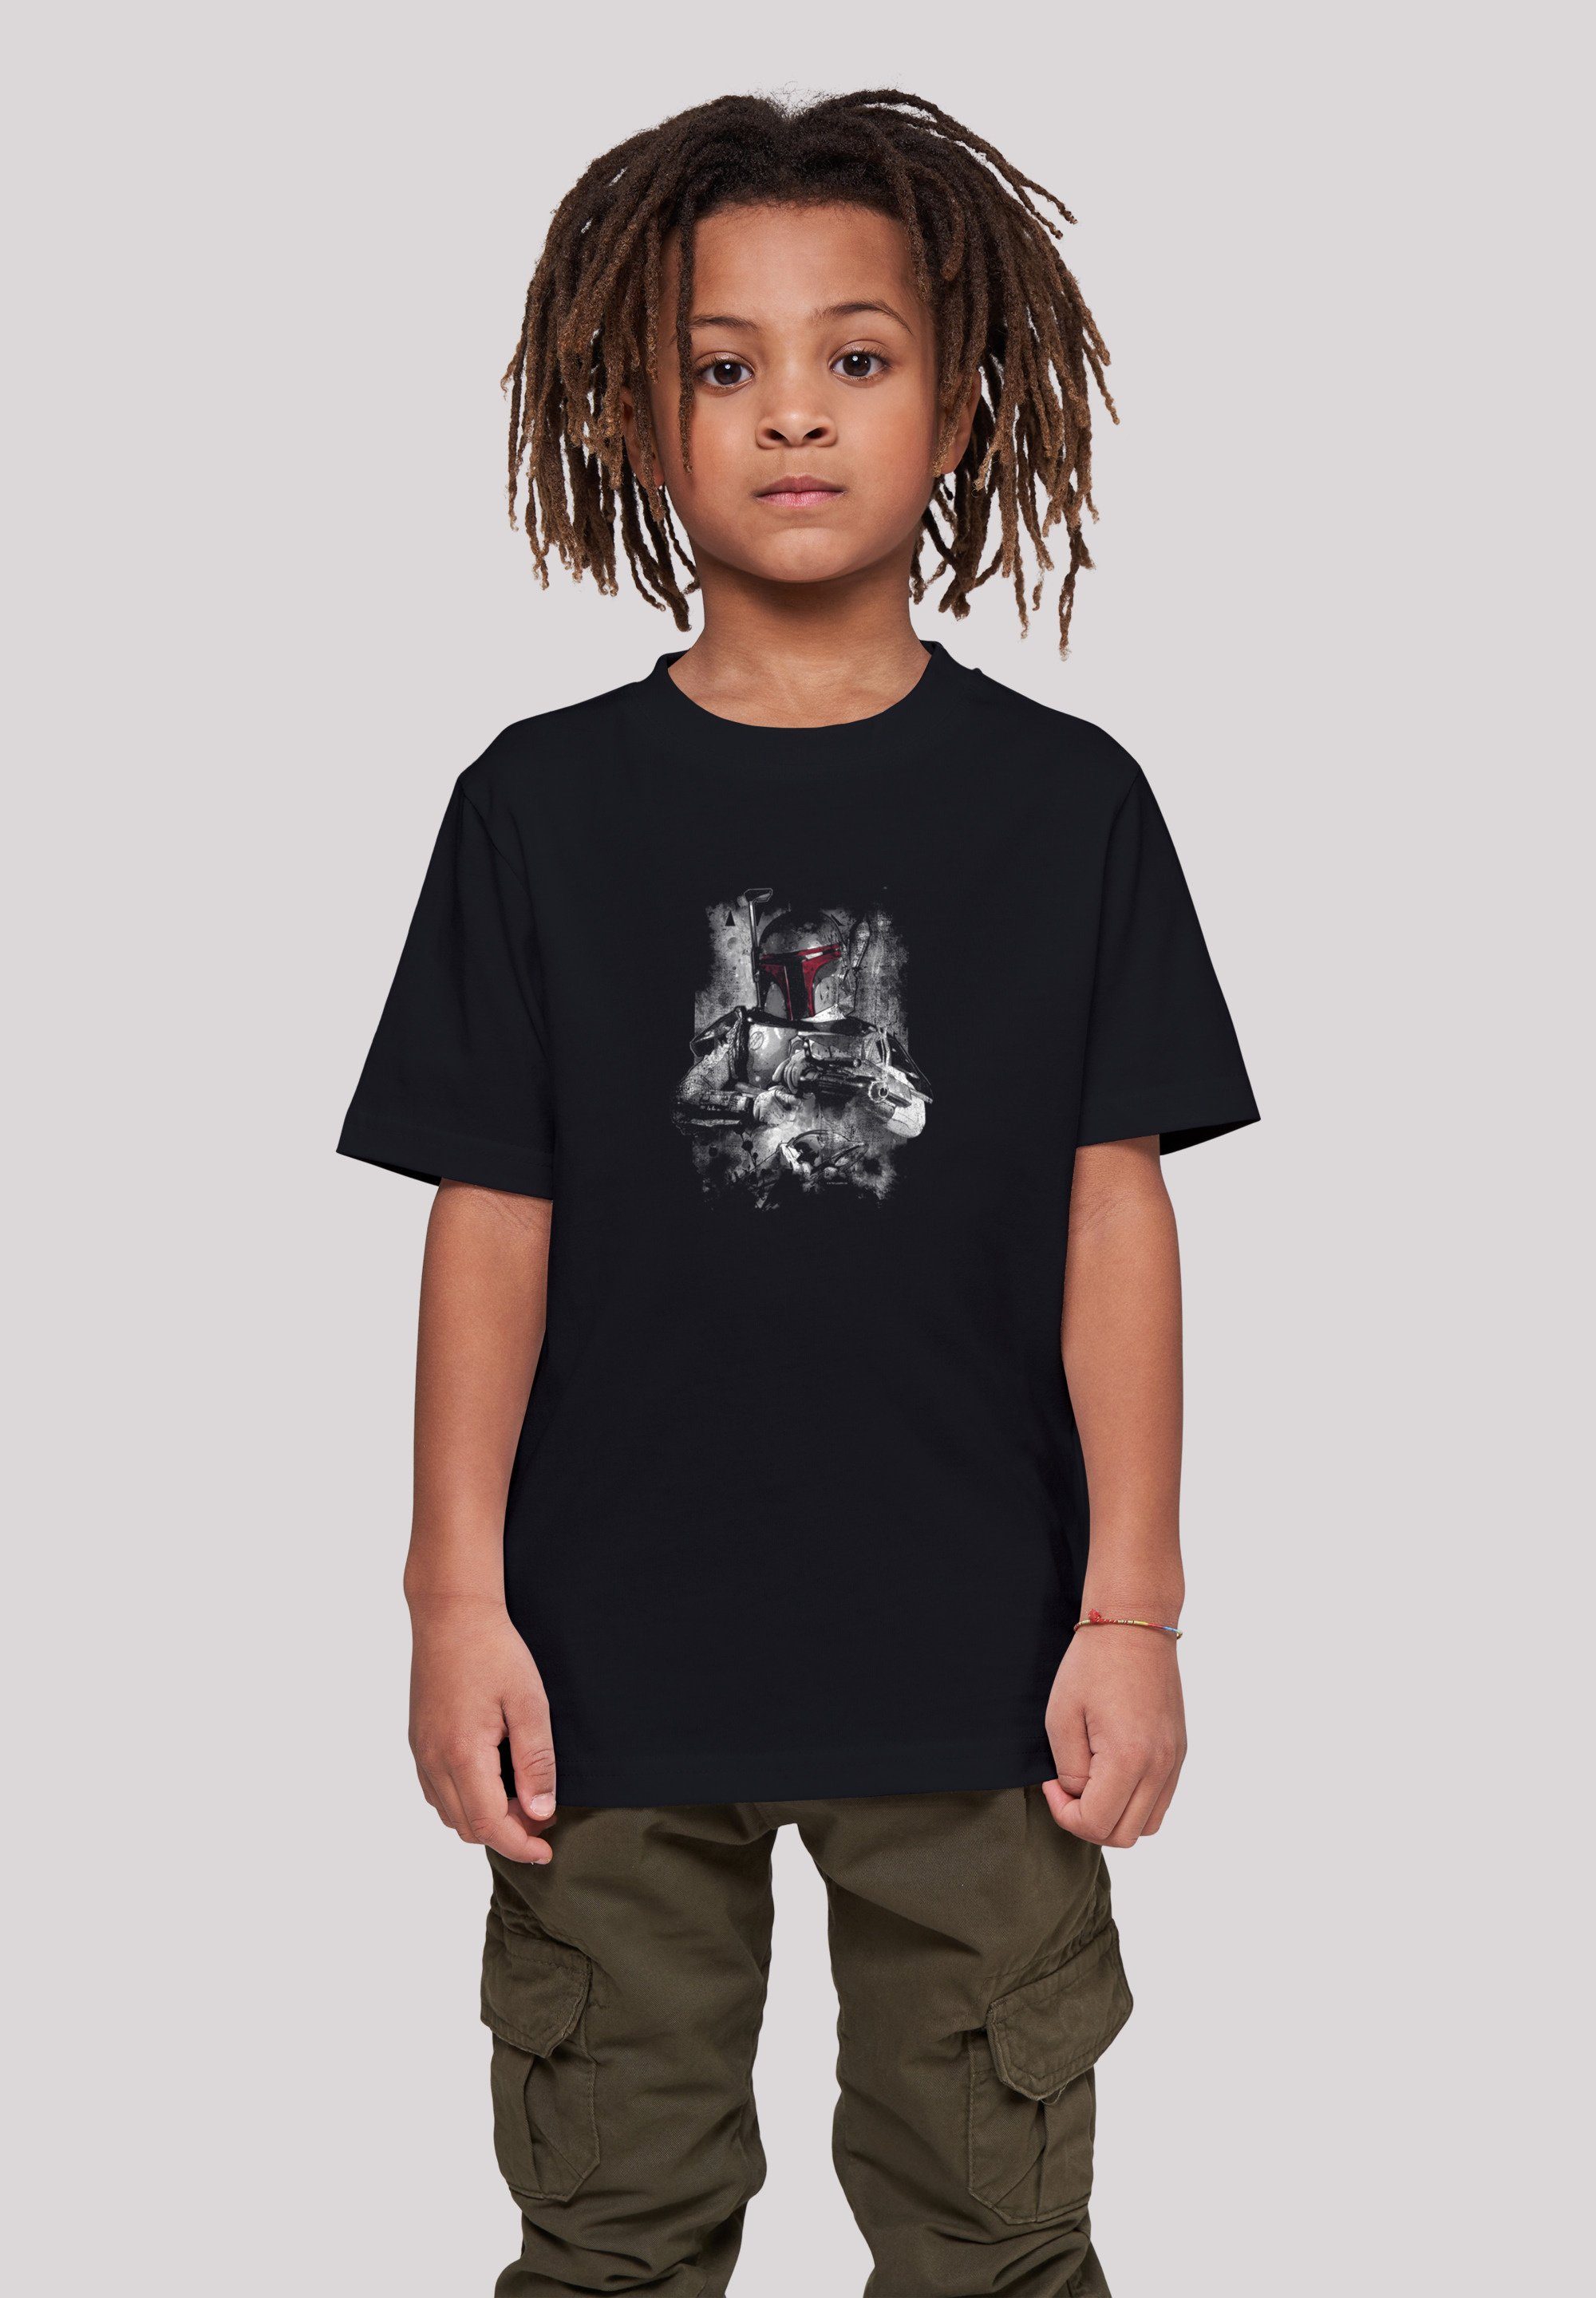 F4NT4STIC T-Shirt Wars Star Distressed Fett Print Boba